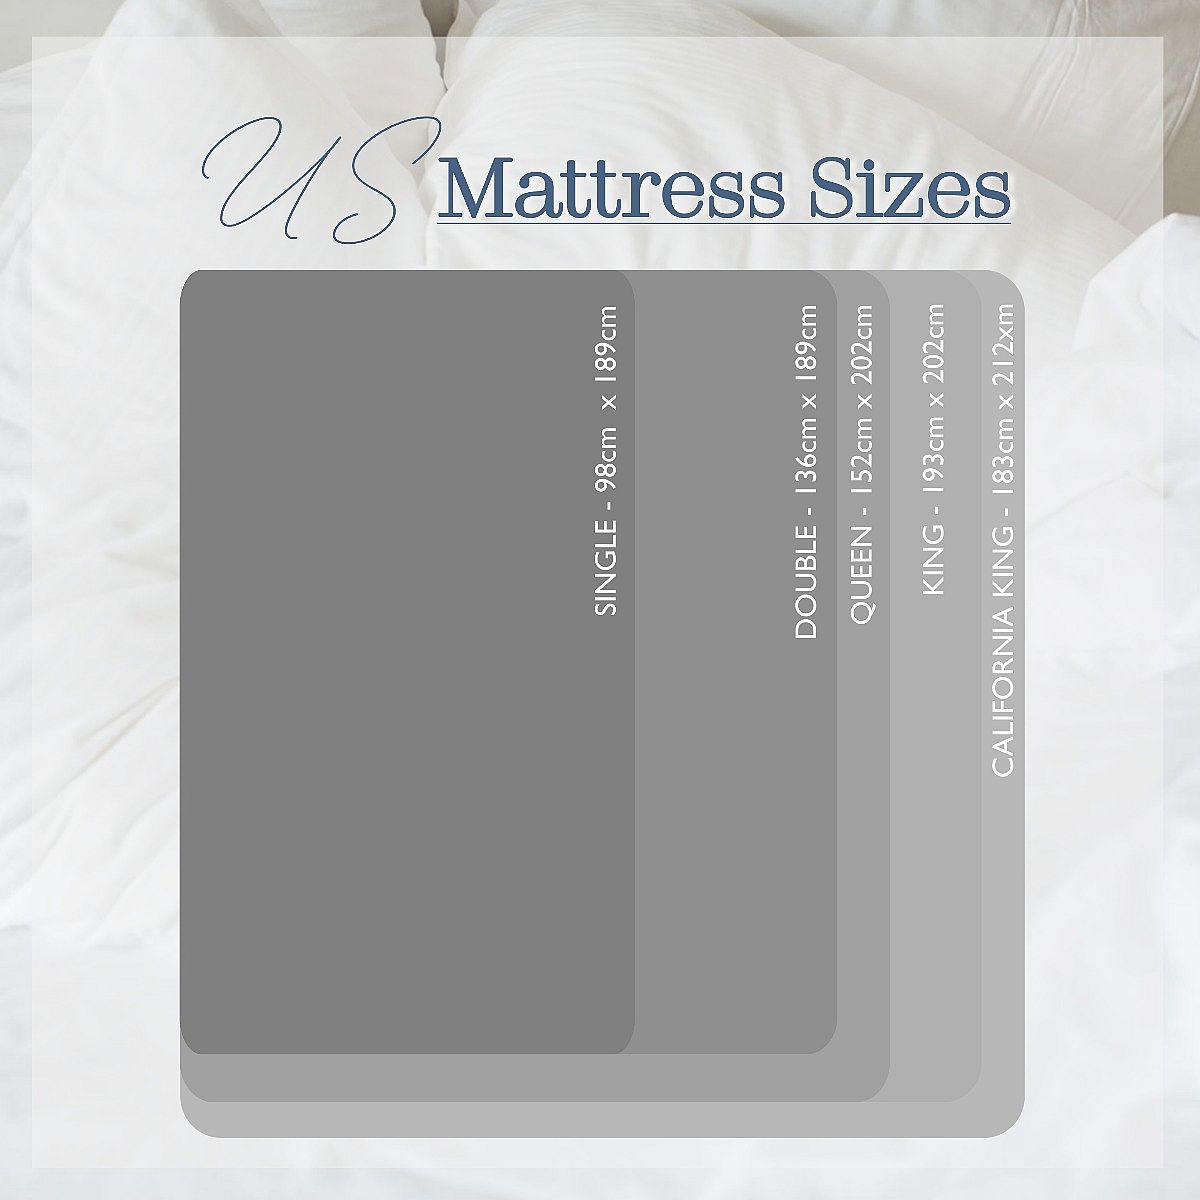 US Mattress Size Chart